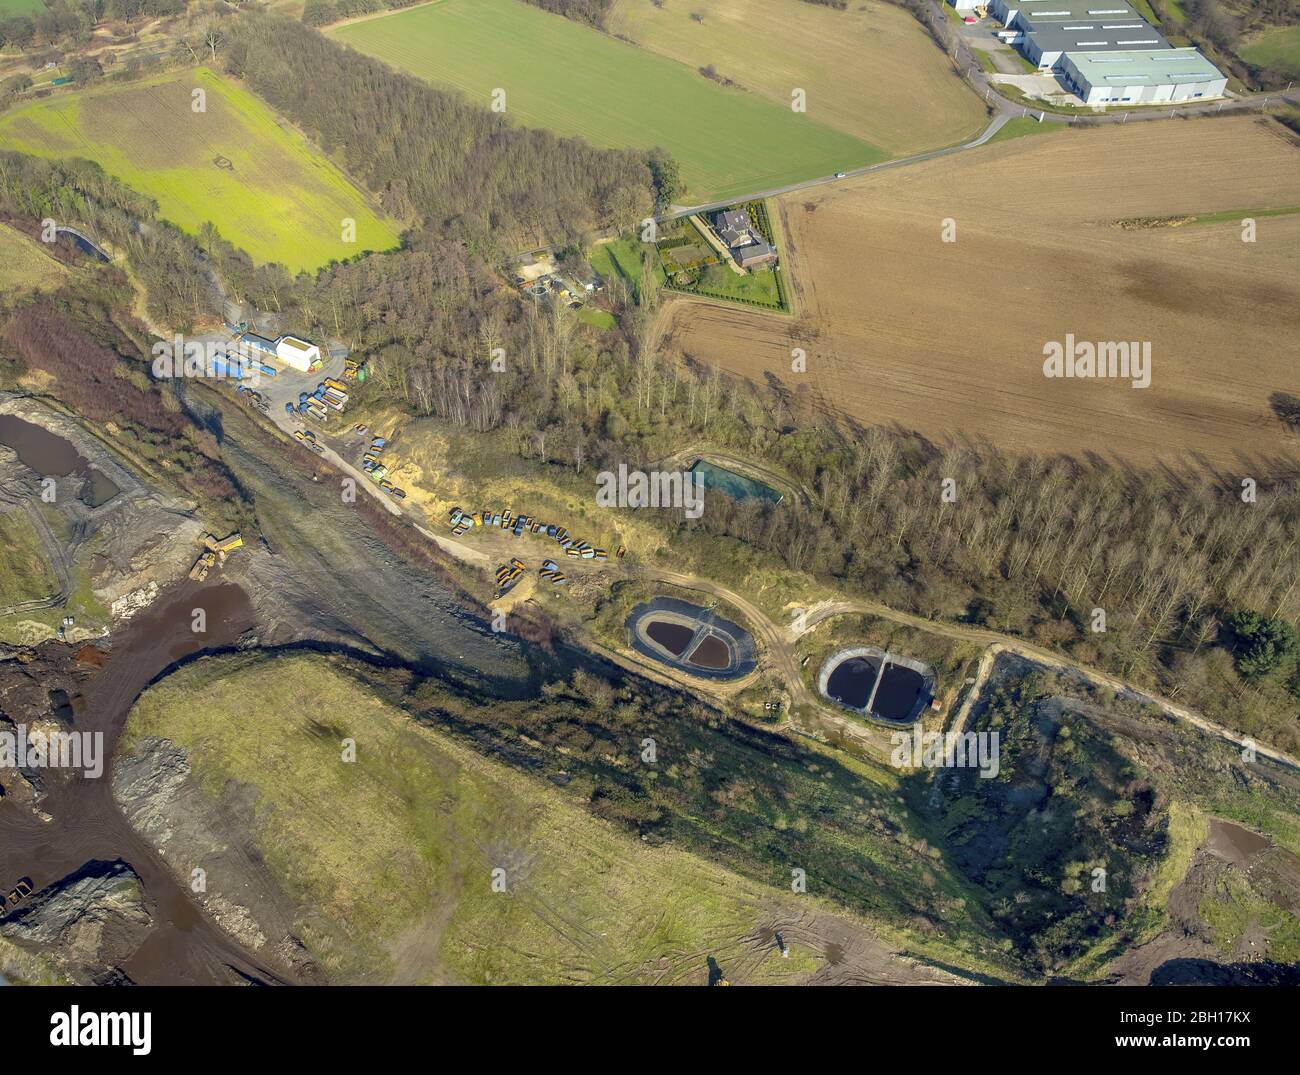 heaped landfill Eyller Berg in Kamp-Lintfort, 27.02.2016, aerial view, Germany, North Rhine-Westphalia, Ruhr Area, Kamp-Lintfort Stock Photo